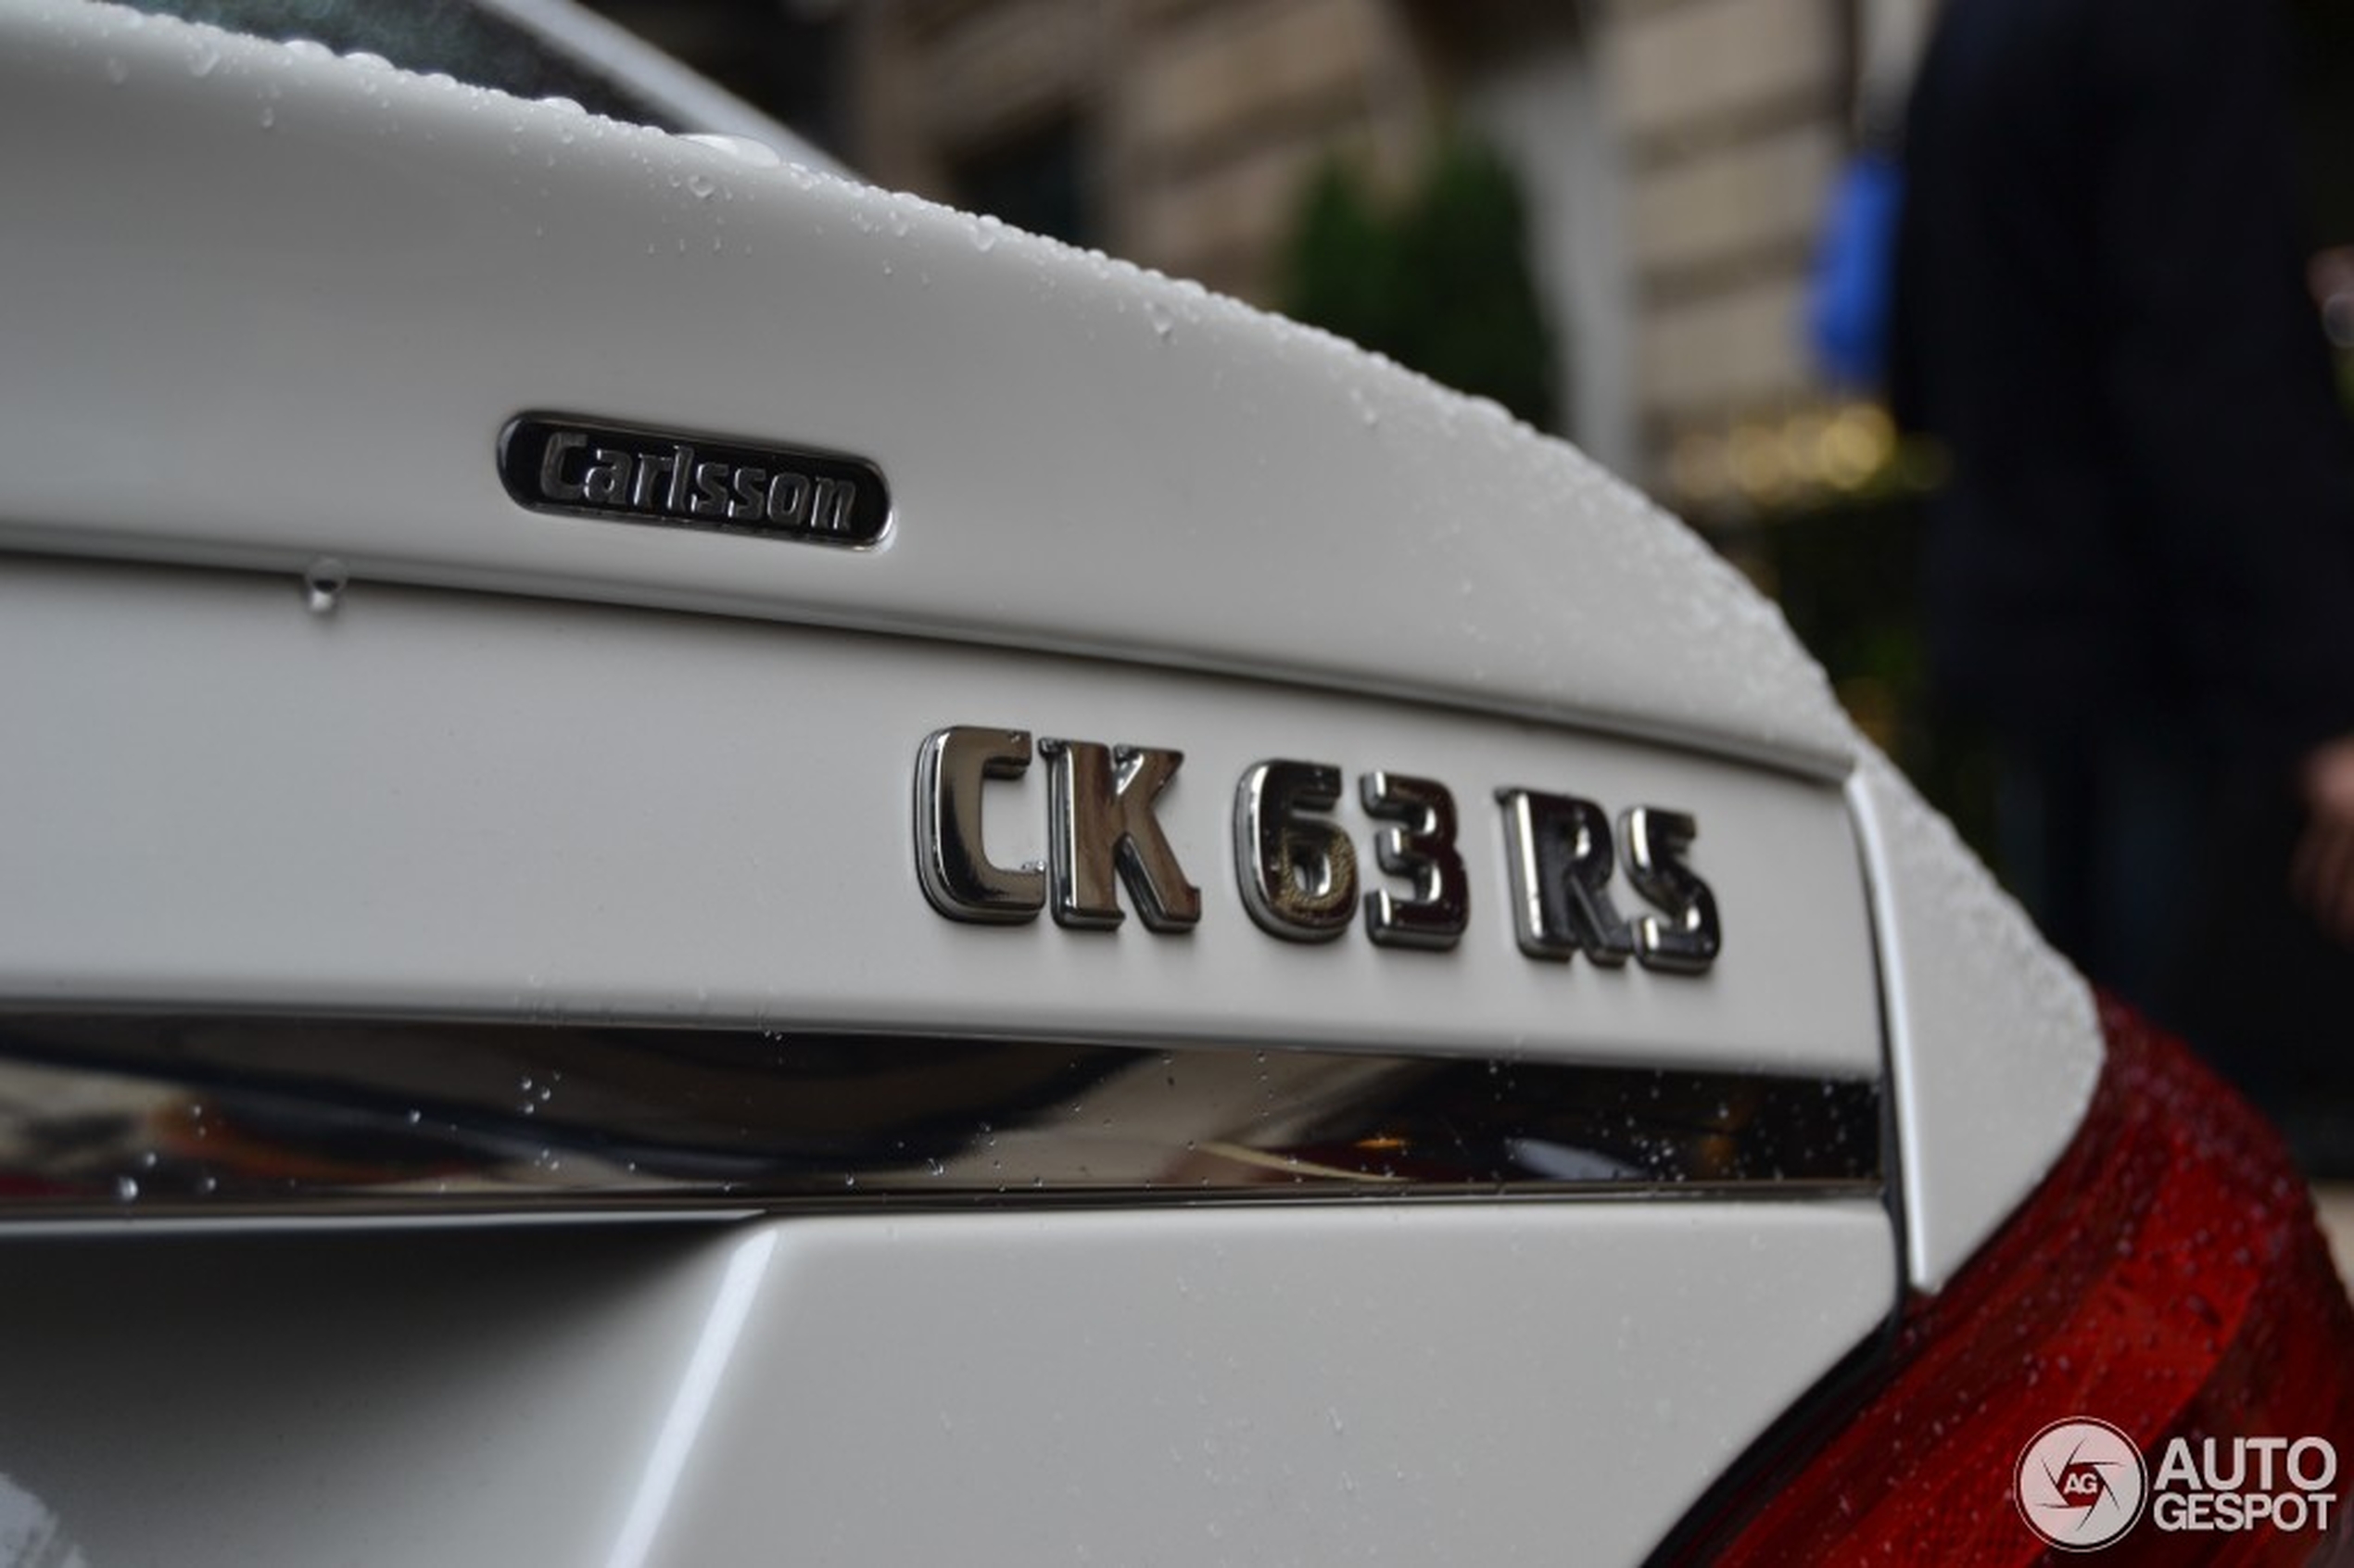 Mercedes-Benz Carlsson CLS CK 63 RS